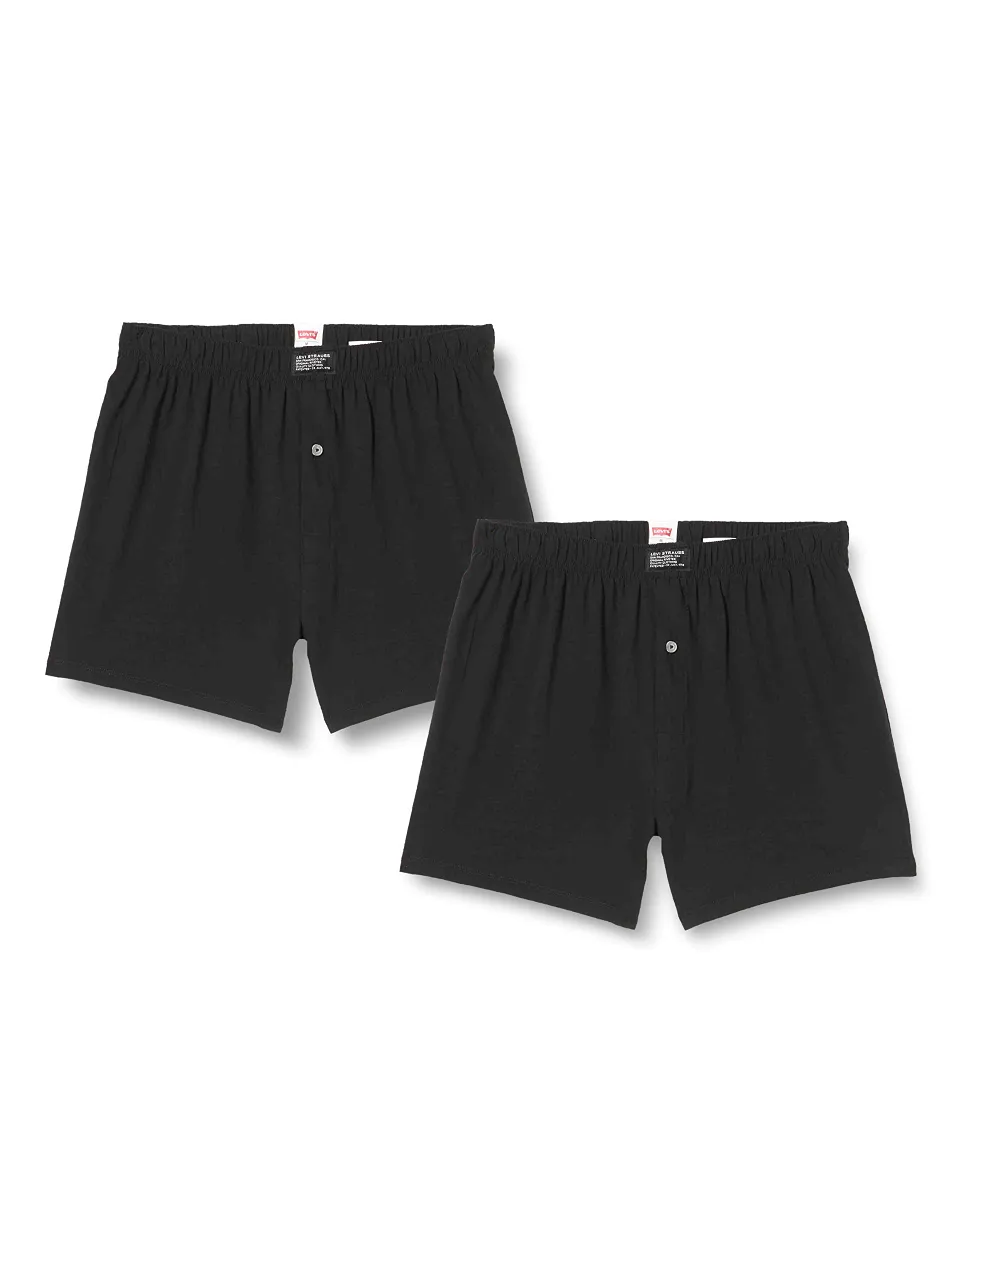 Levi's Men's Jersey Loose Fit Boxer Shorts